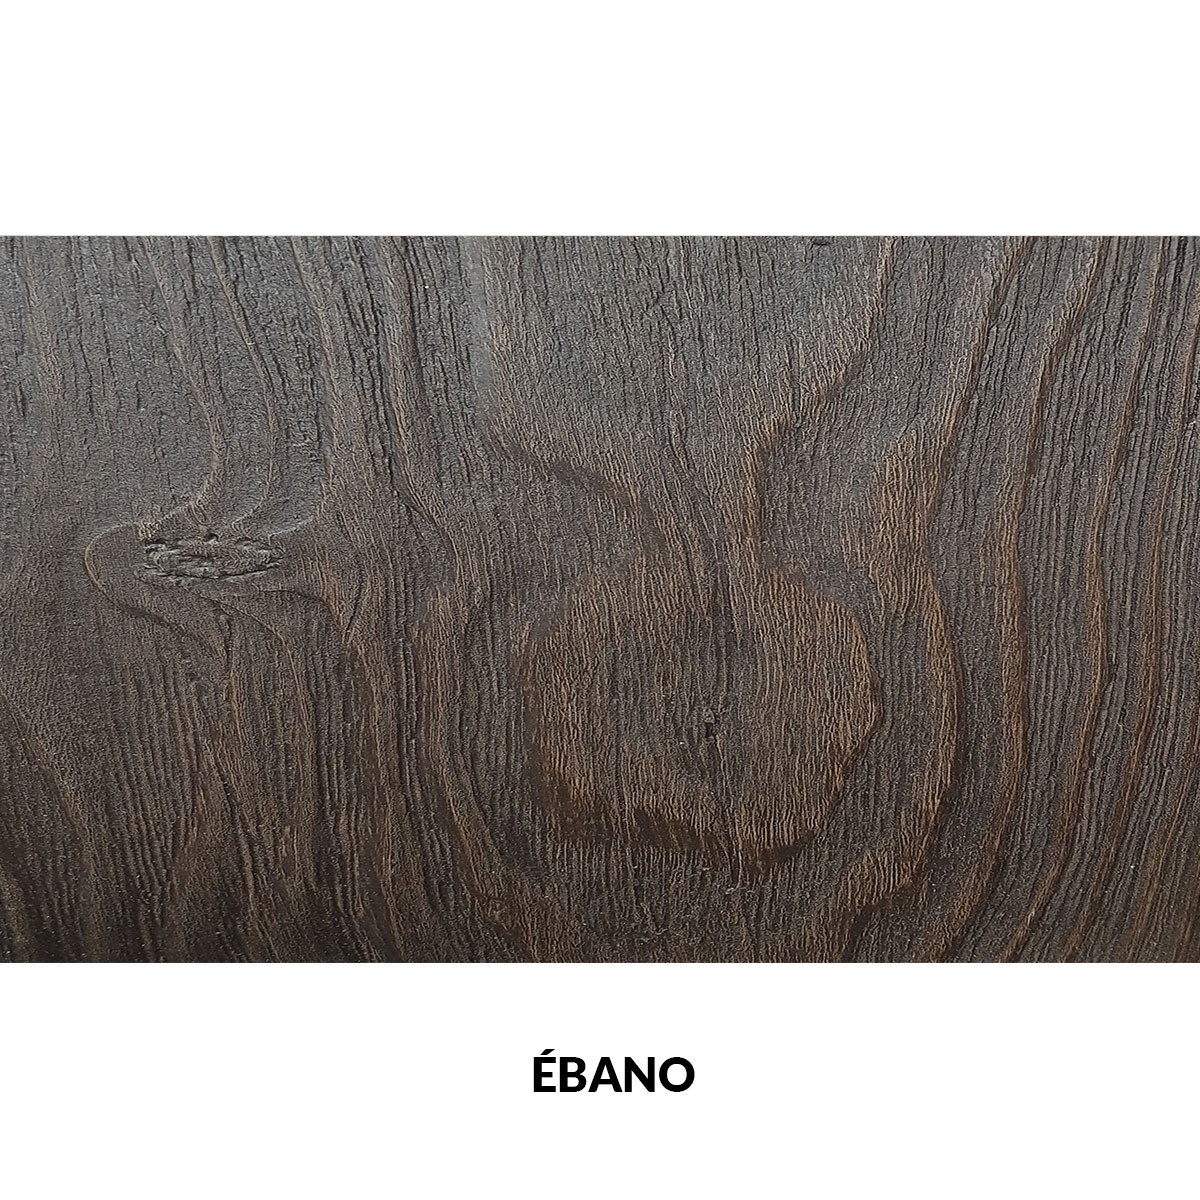 300x62cm painel rústico de seis ripas de imitação de madeira ébano